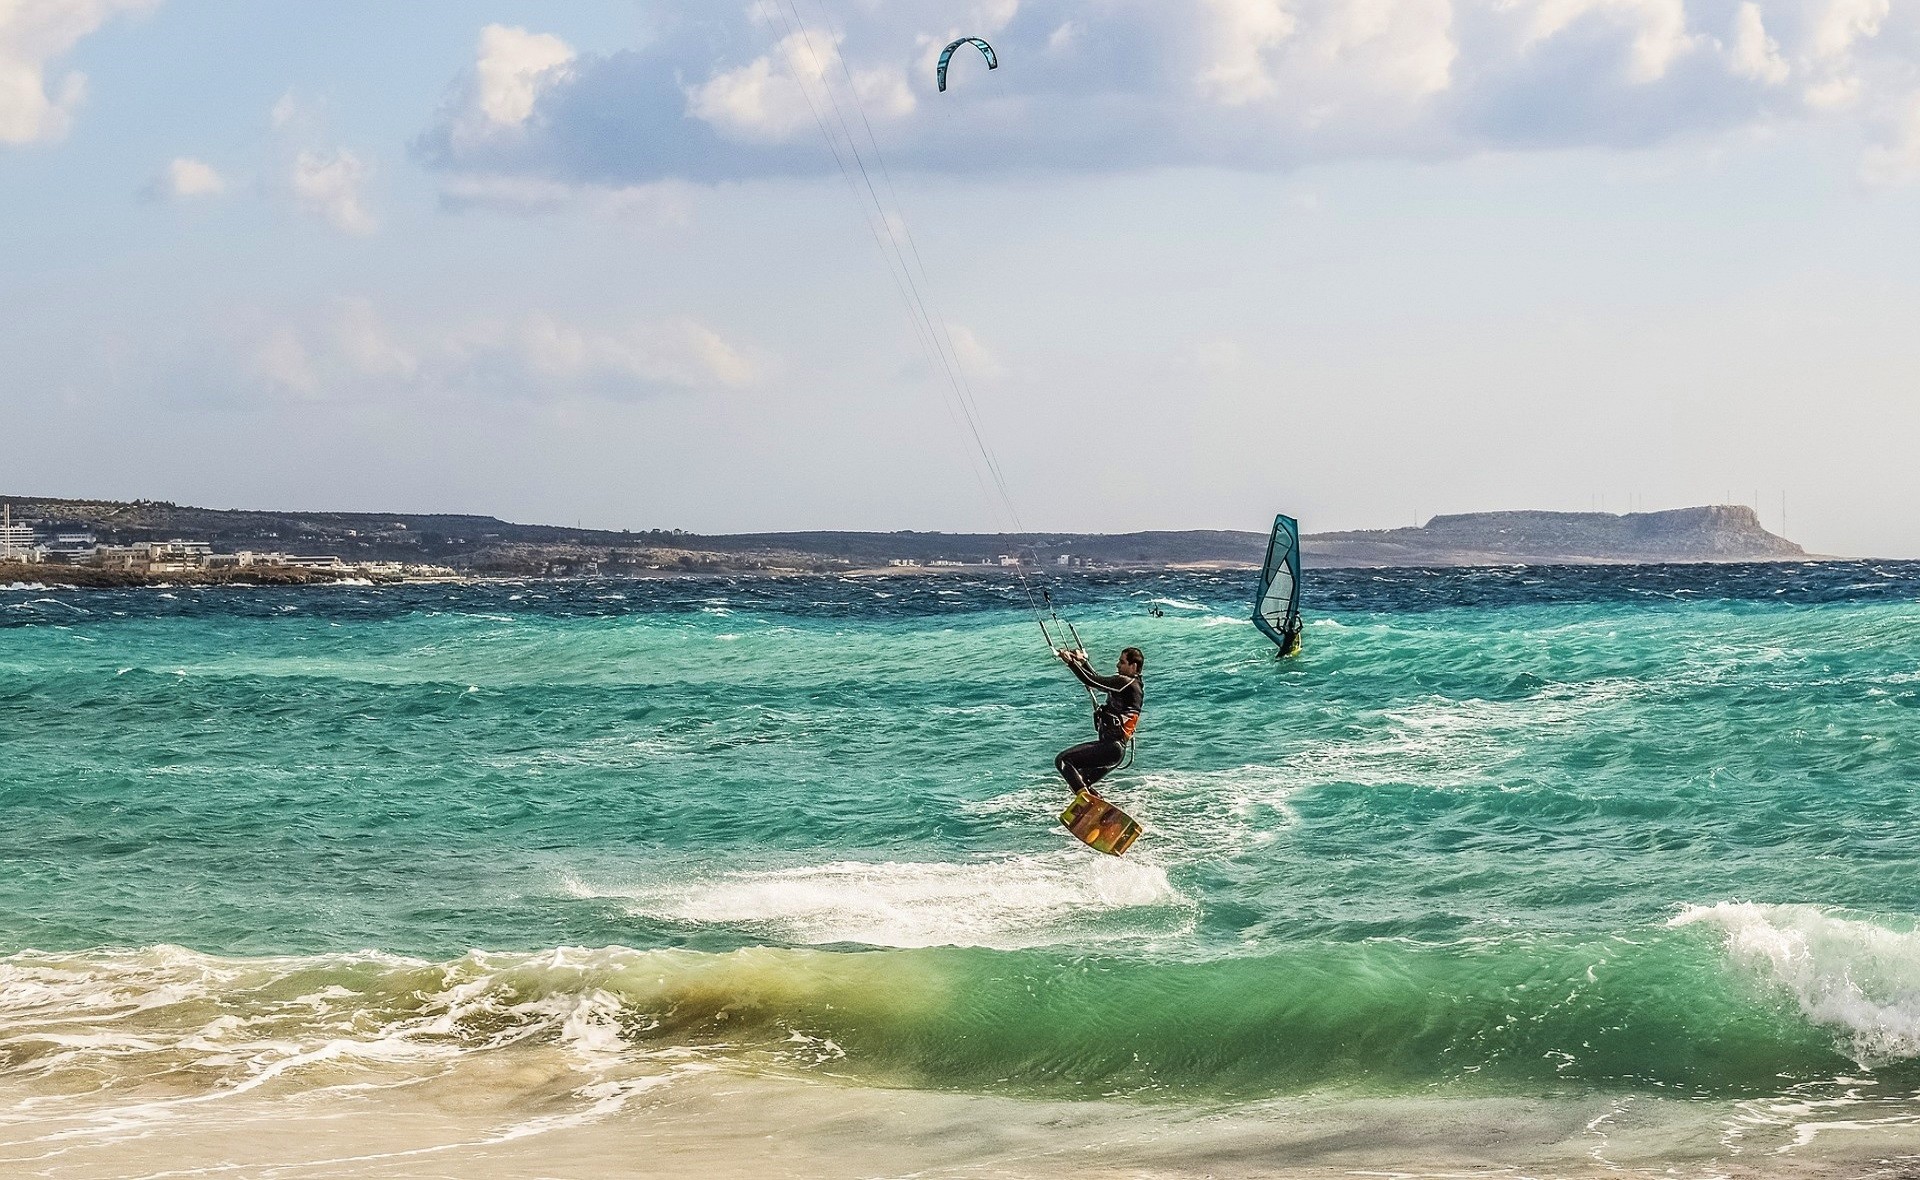 kitesurfer na tle lazurowego morza otoczonego wzniesieniami, w tle windusutfer